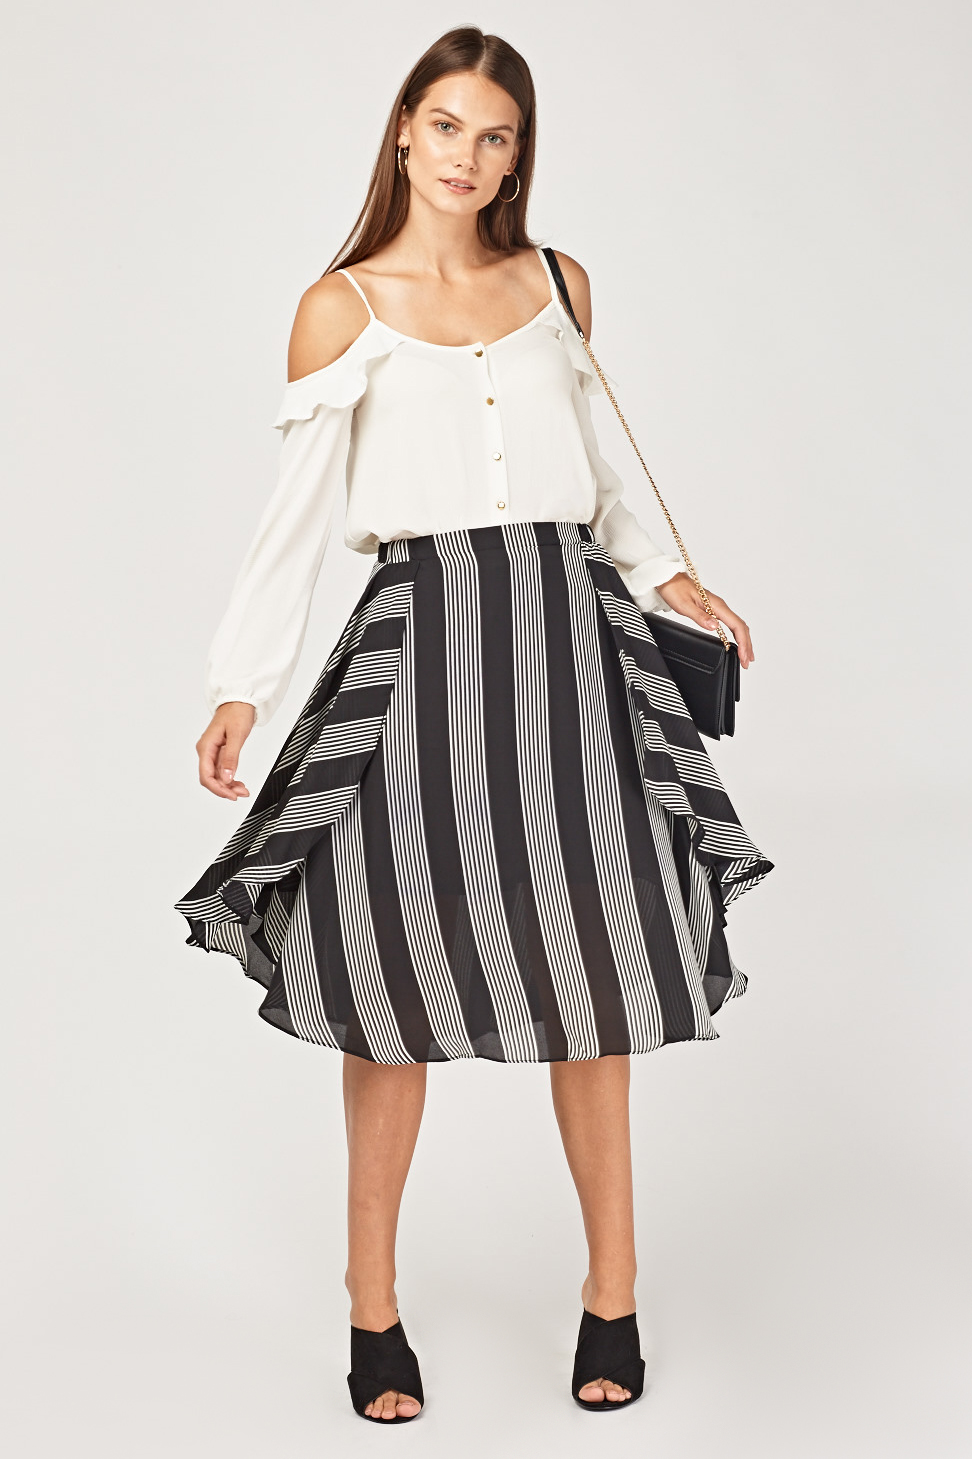 Sheer Striped Overlay Skirt - Just $3